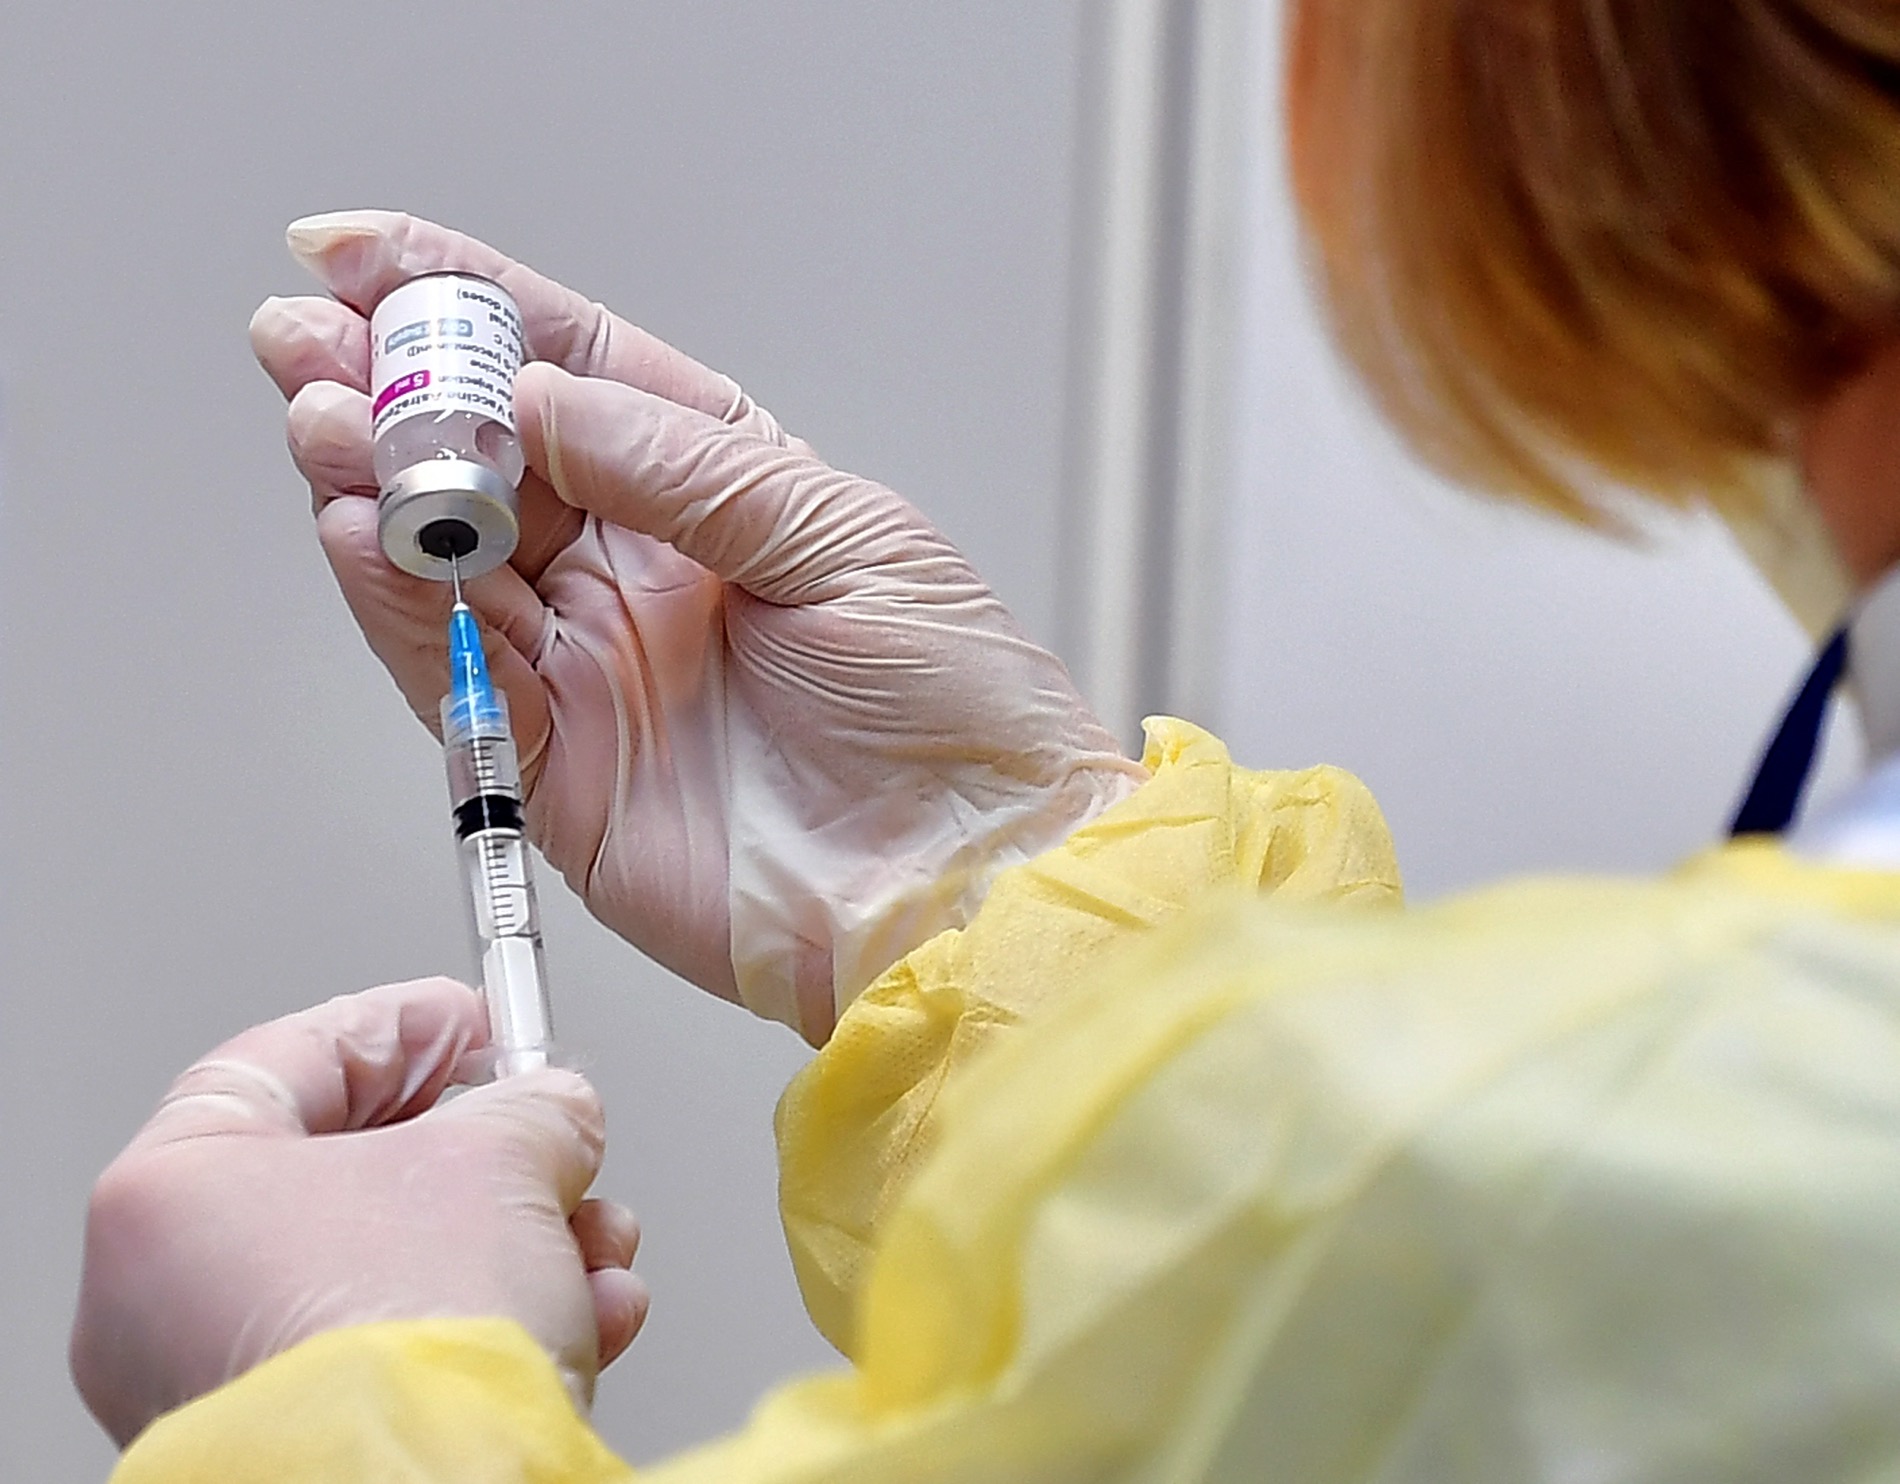 La UE: “AstraZeneca debe suministrar la cantidad suficiente de vacuna sin esperar”